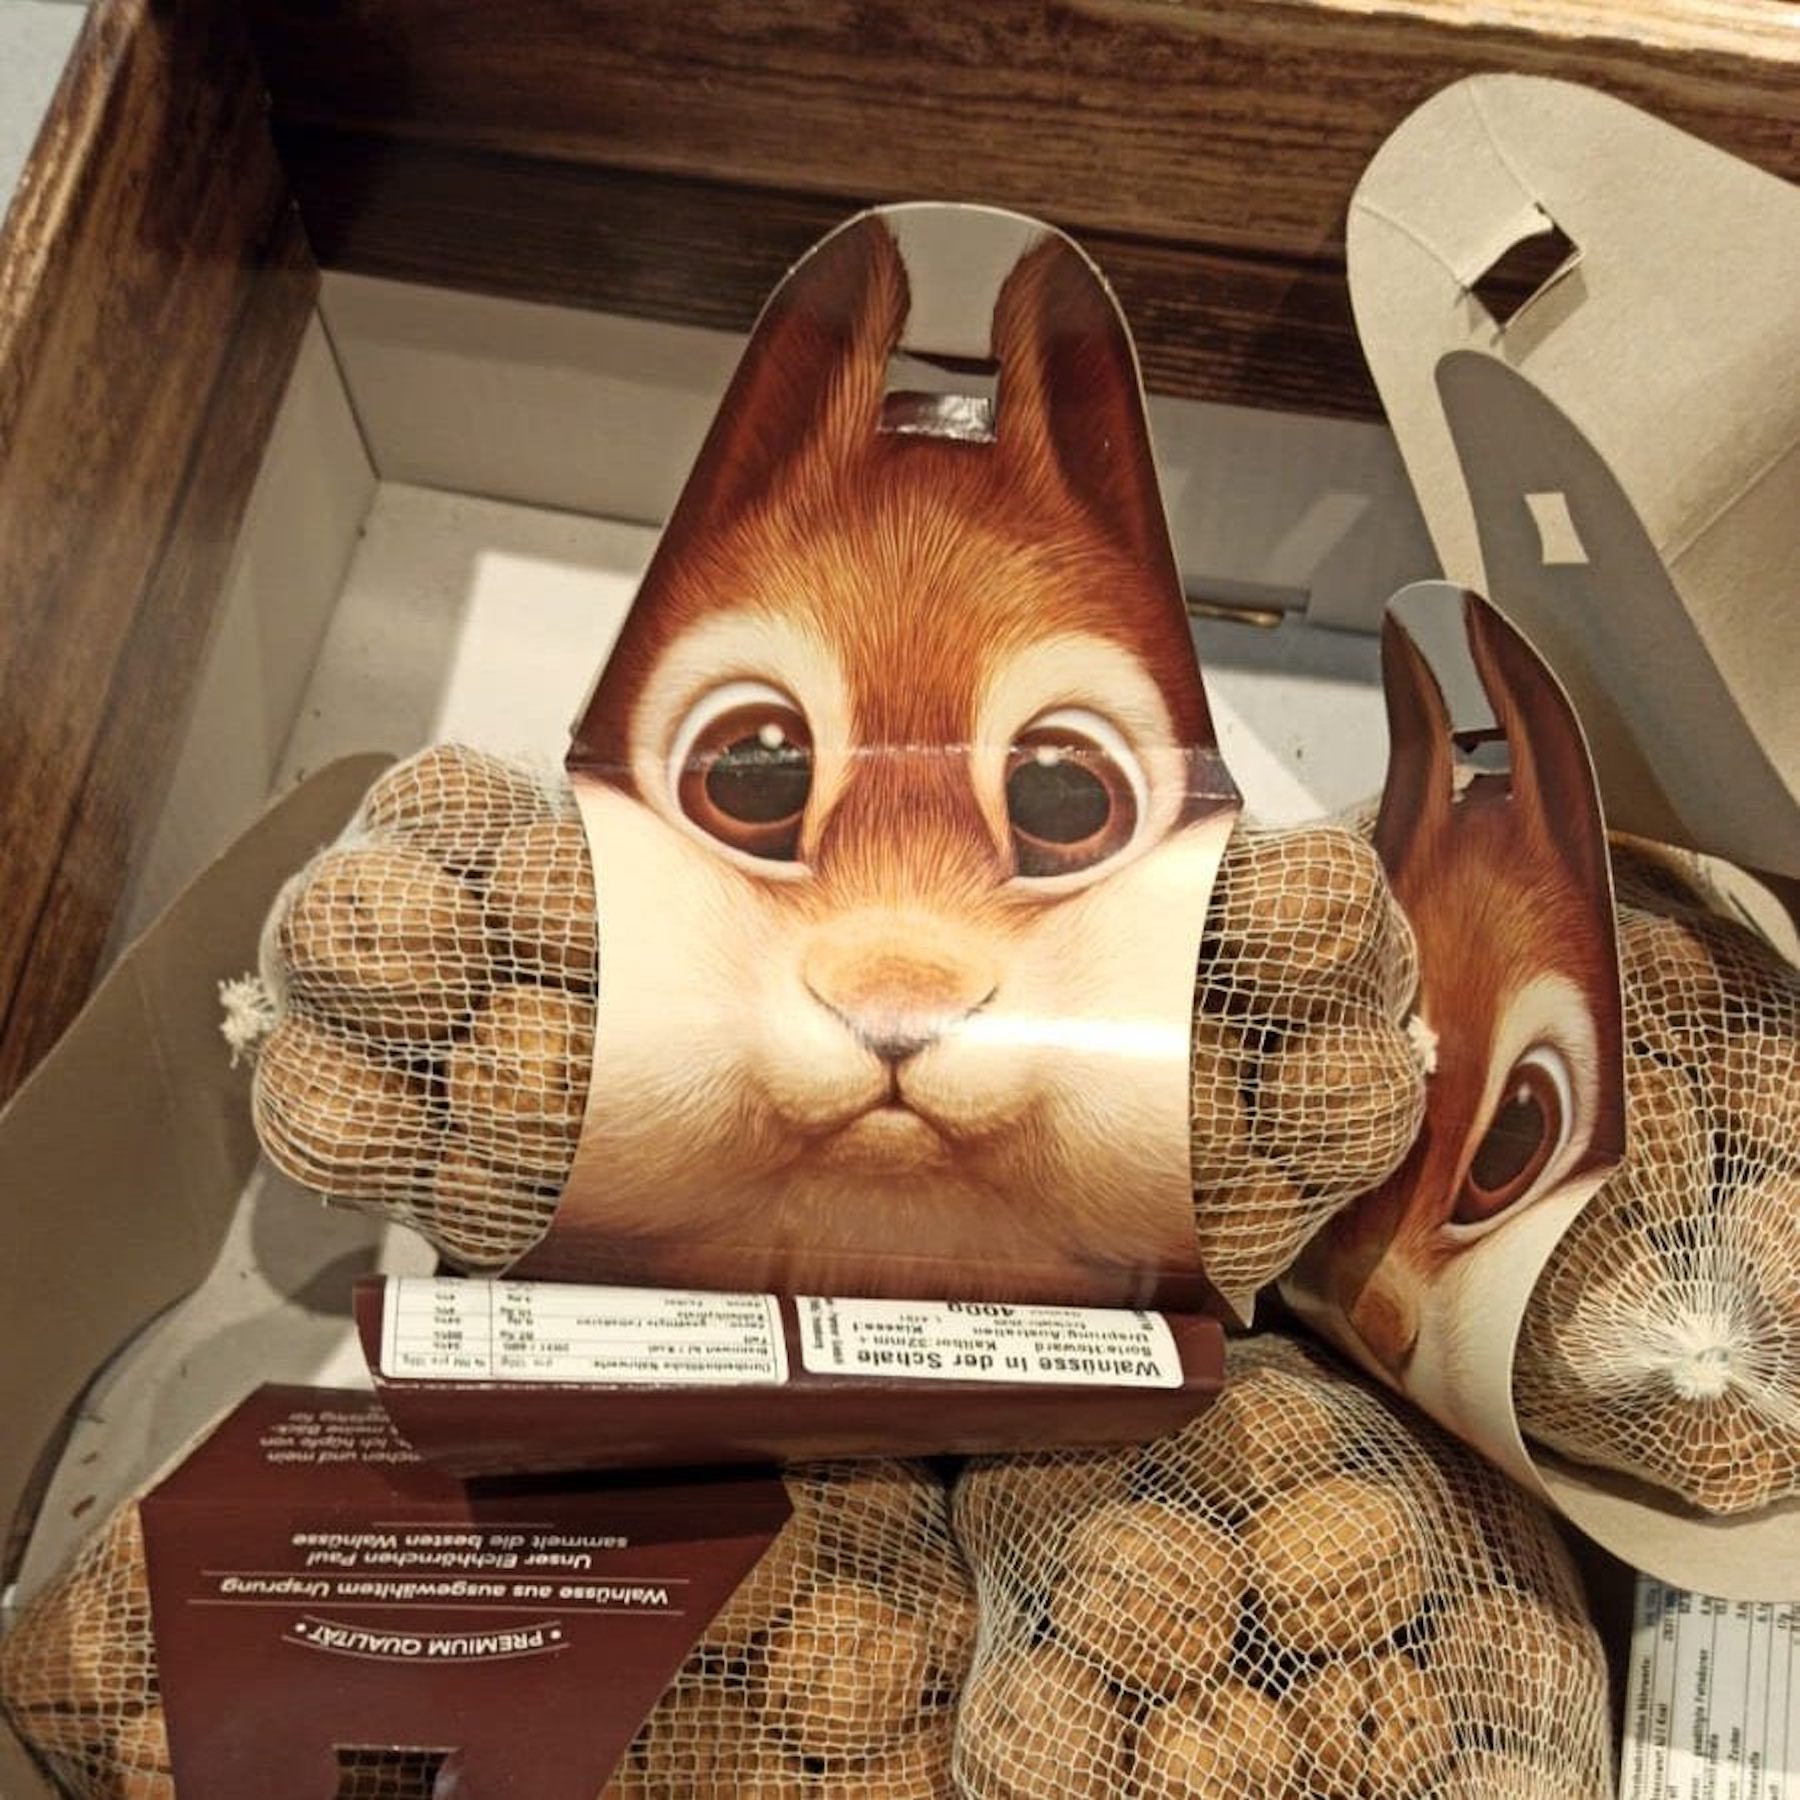 Un adorable packaging en forme d'écureuil pour vendre des noisettes